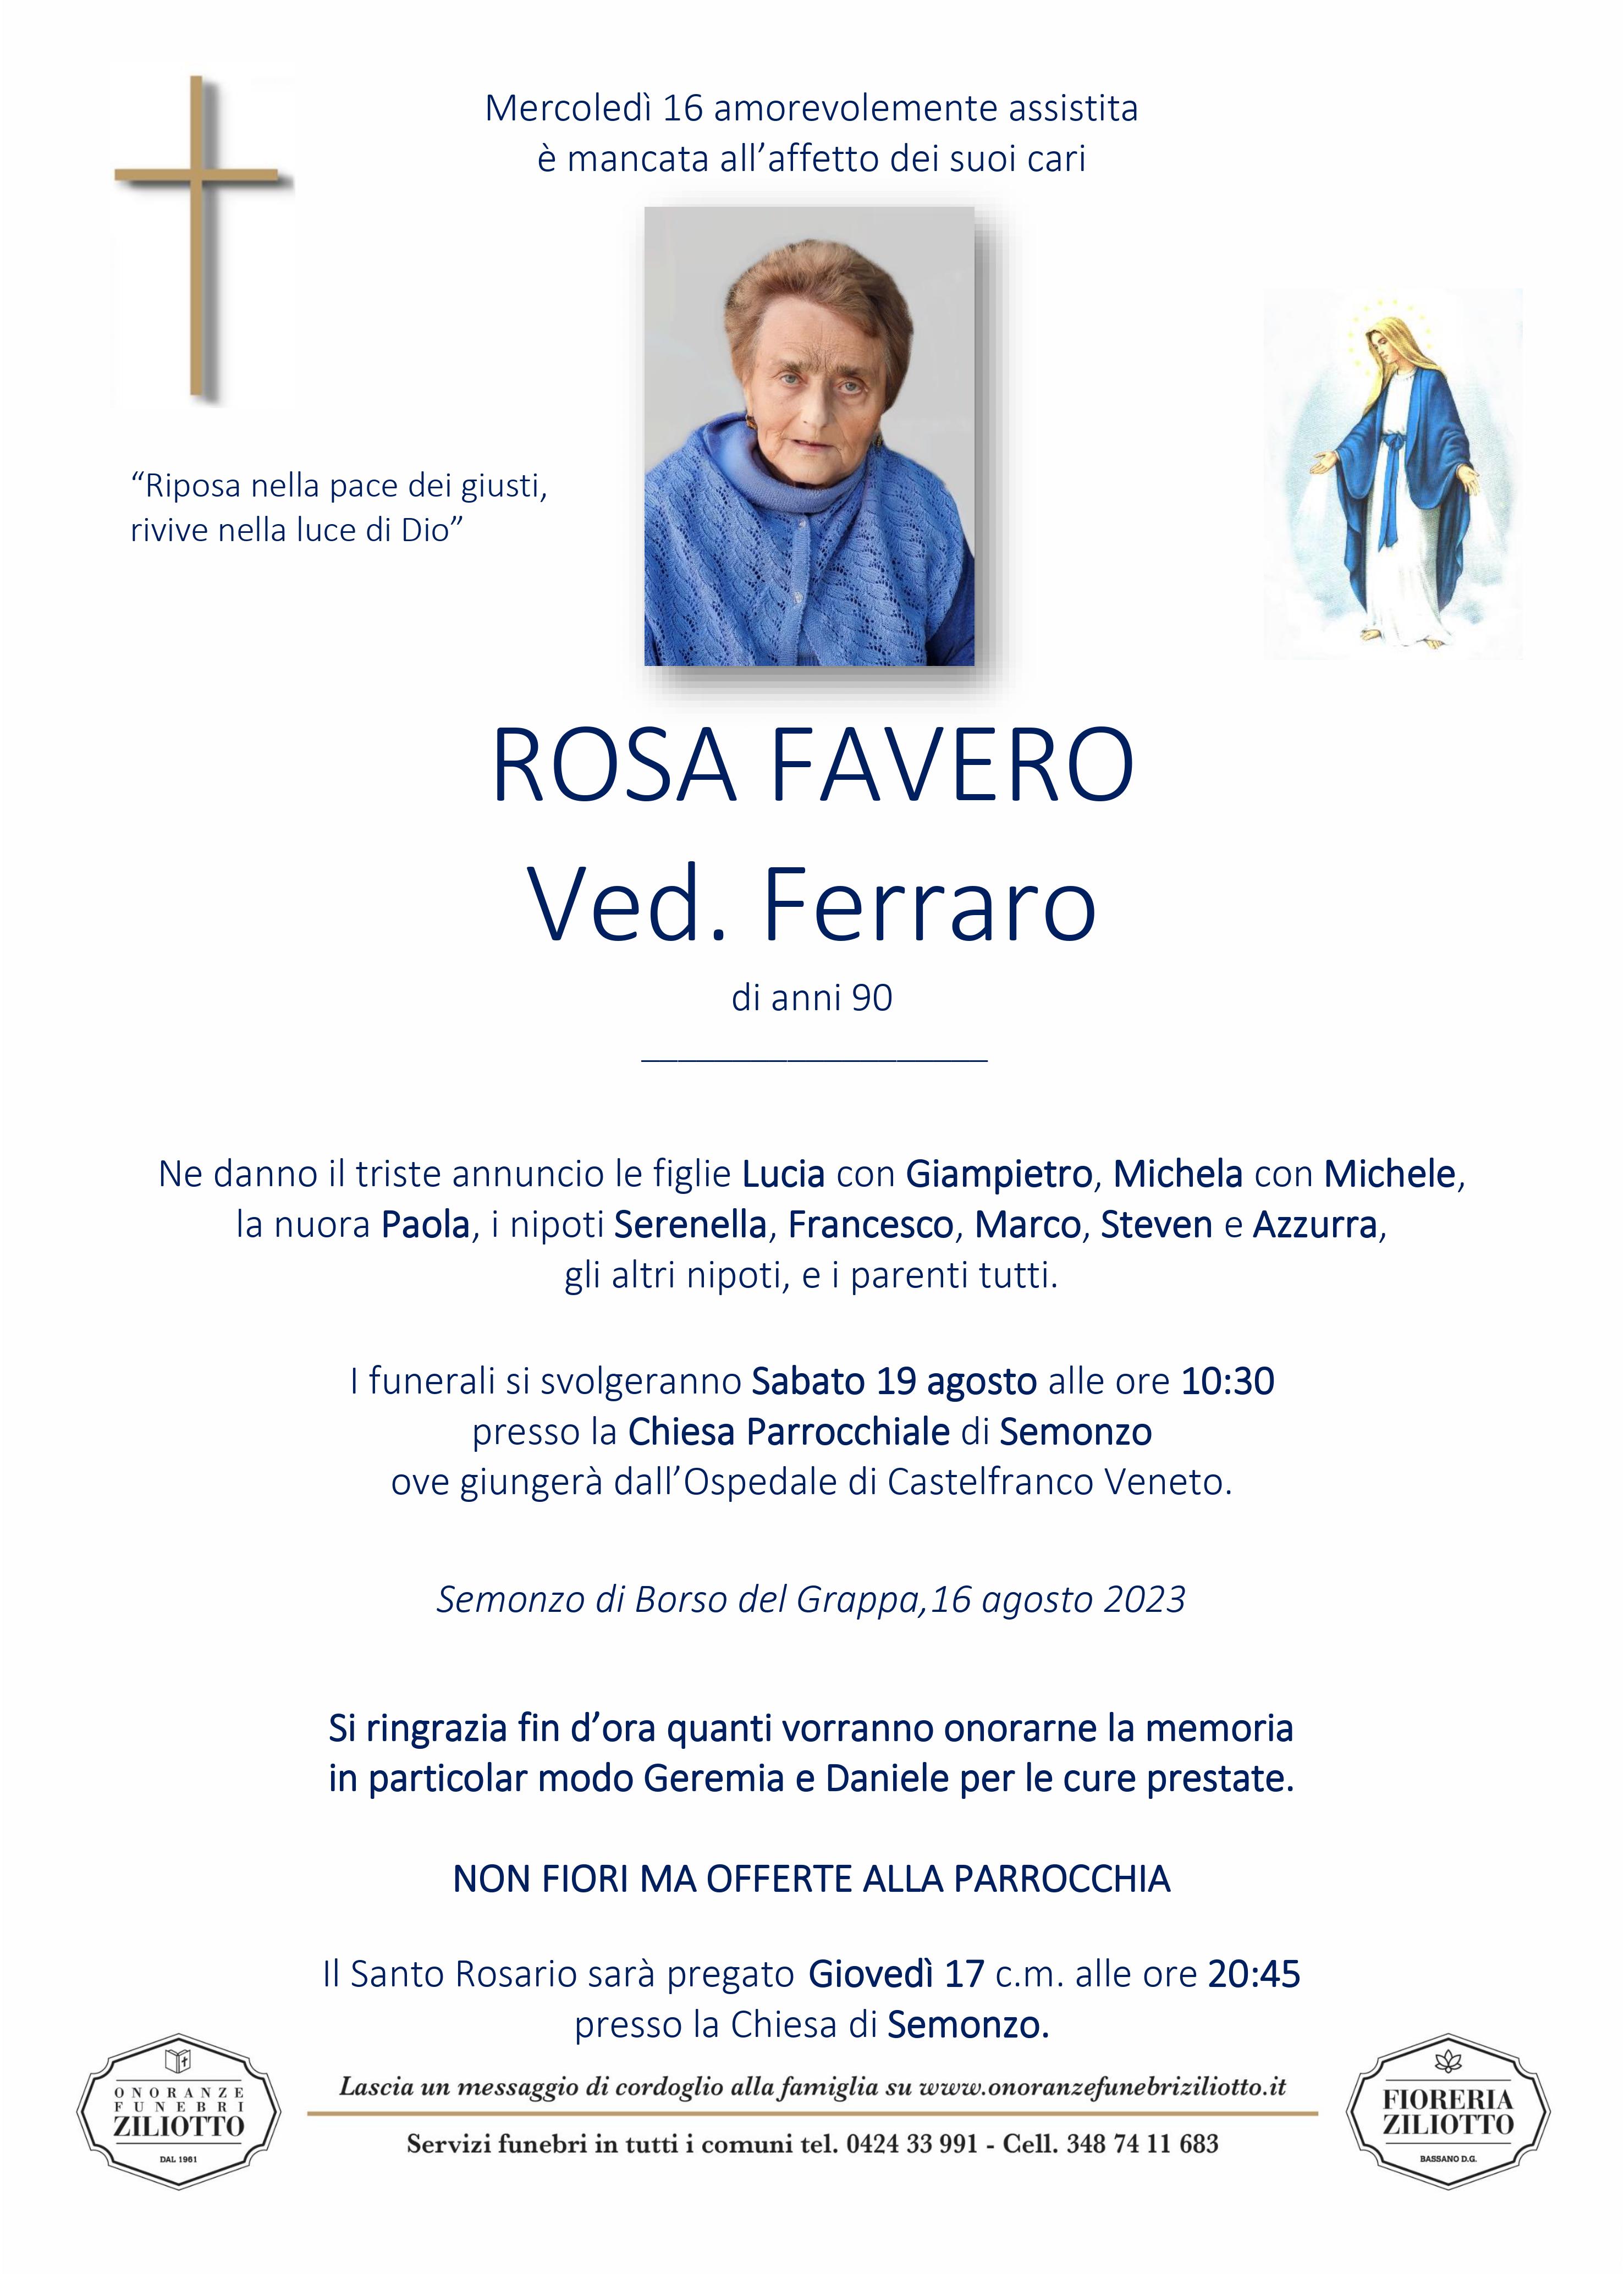 Rosa Favero - 90 anni - Semonzo di Borso del Grappa